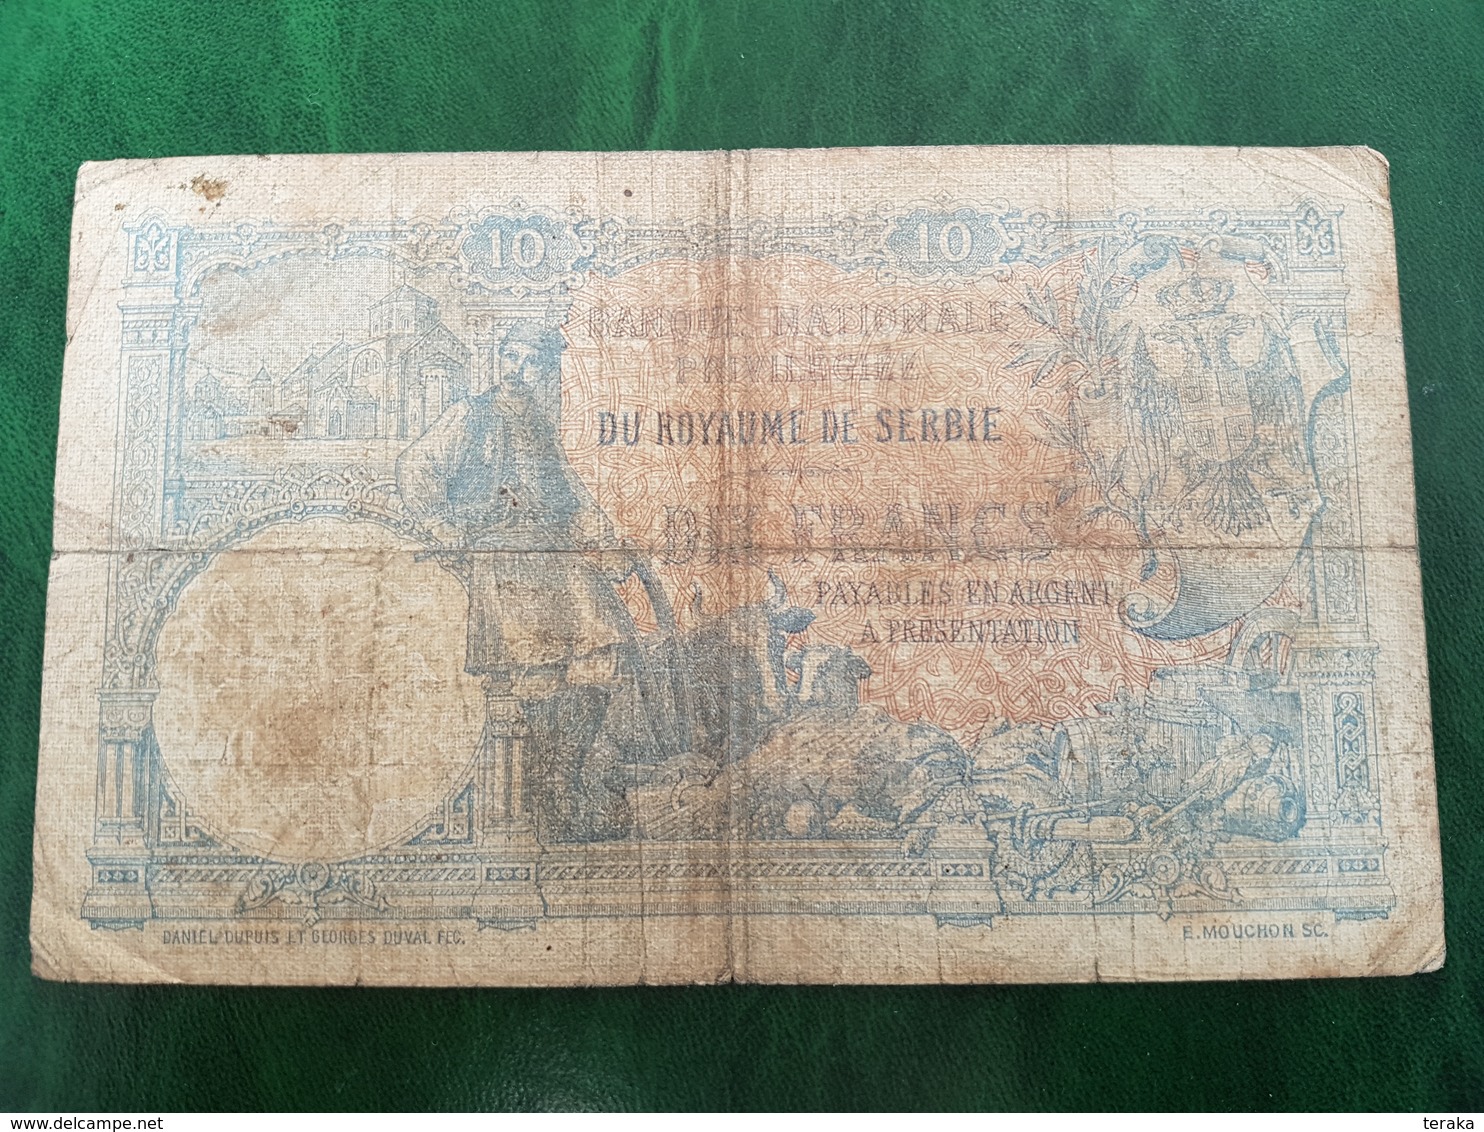 Billet De Dix Francs 1893 Royaume De Serbie - Serbia